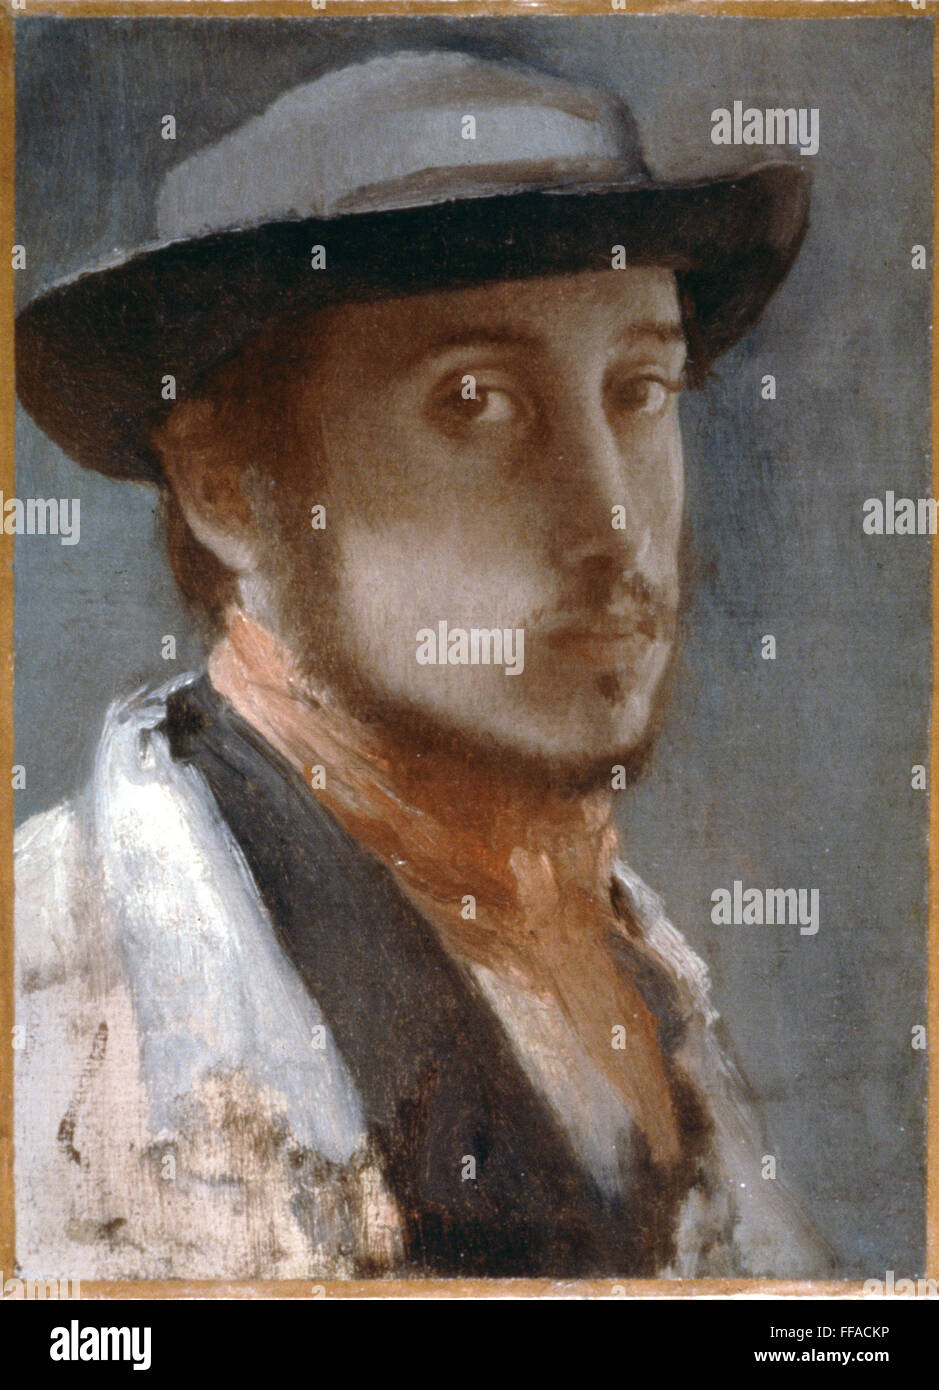 DEGAS: SELF-PORTRAIT. /nOil on canvas, 1857-58. Stock Photo